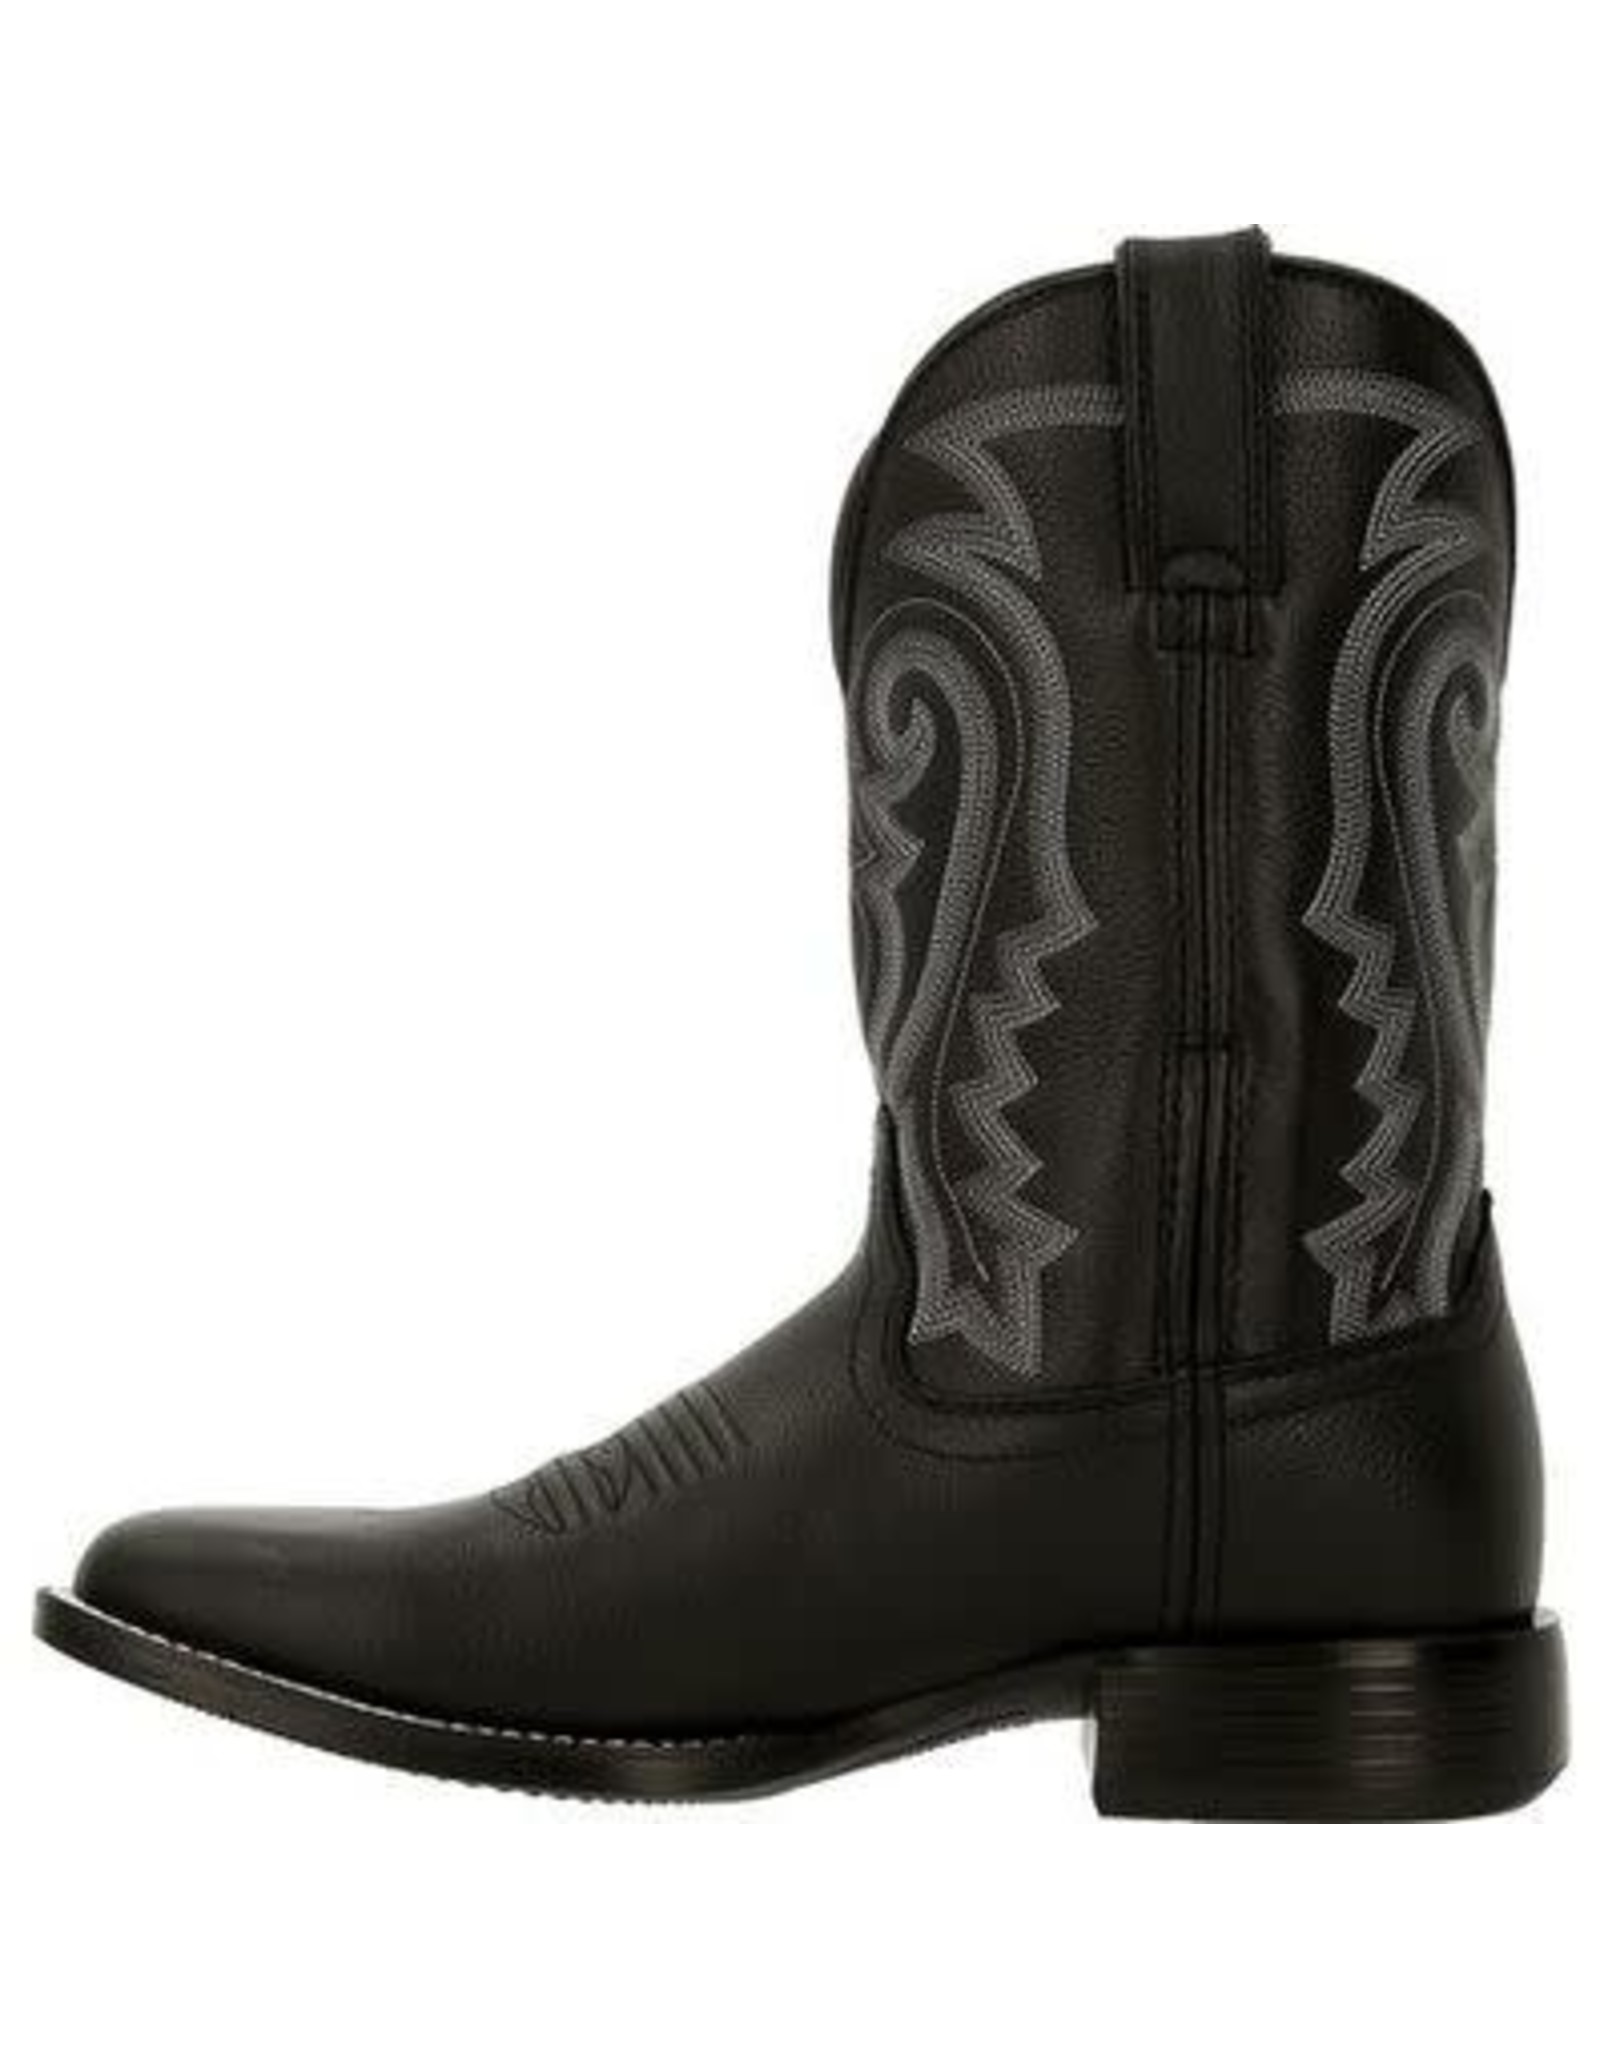 Durango Men's Westward Black Onyx DDB0340 Western Boots